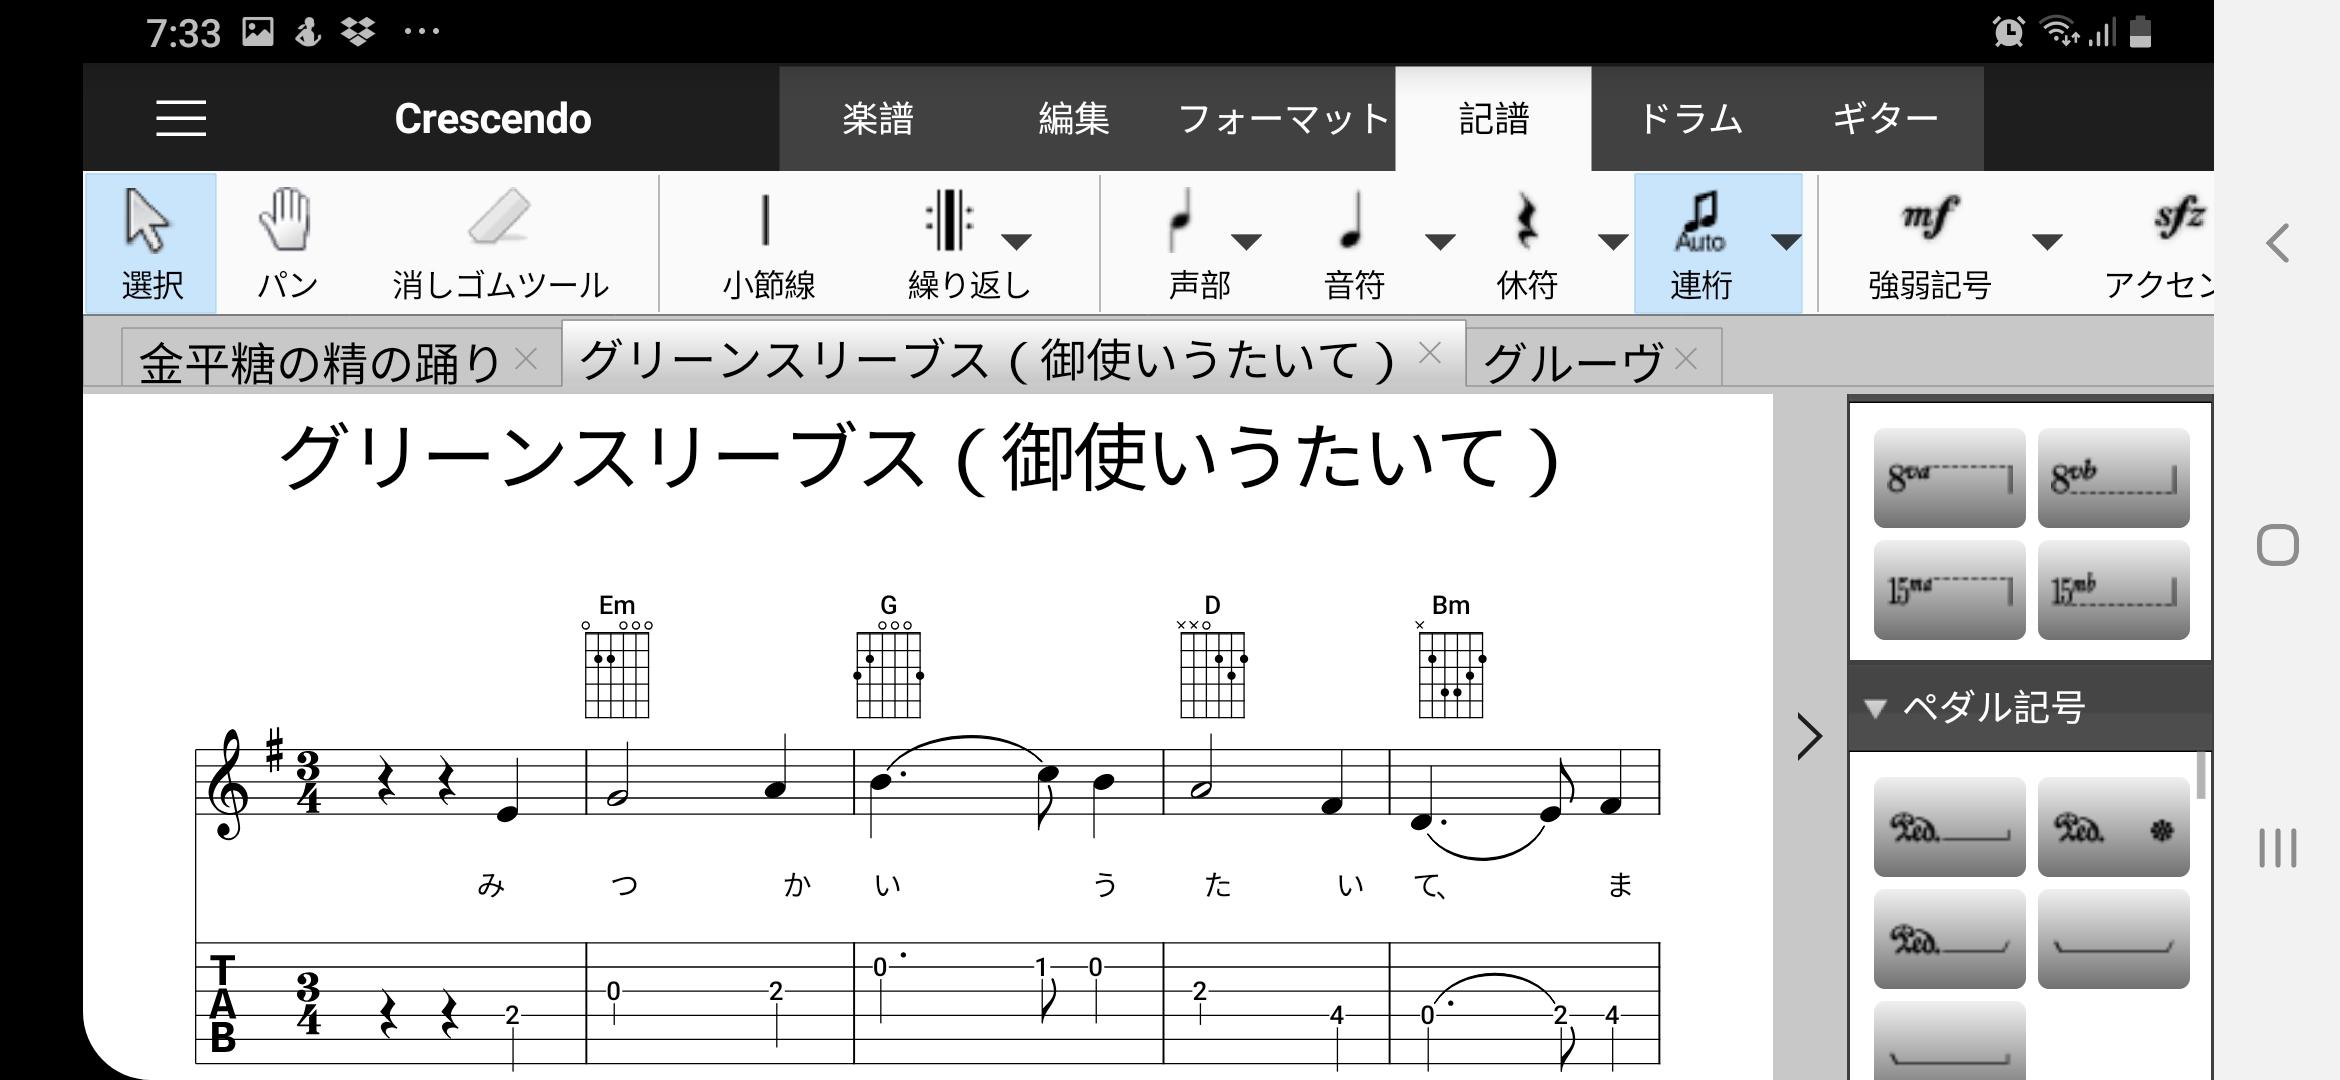 Crescendo楽譜作成アプリ無料版 6.63 Screenshot 2